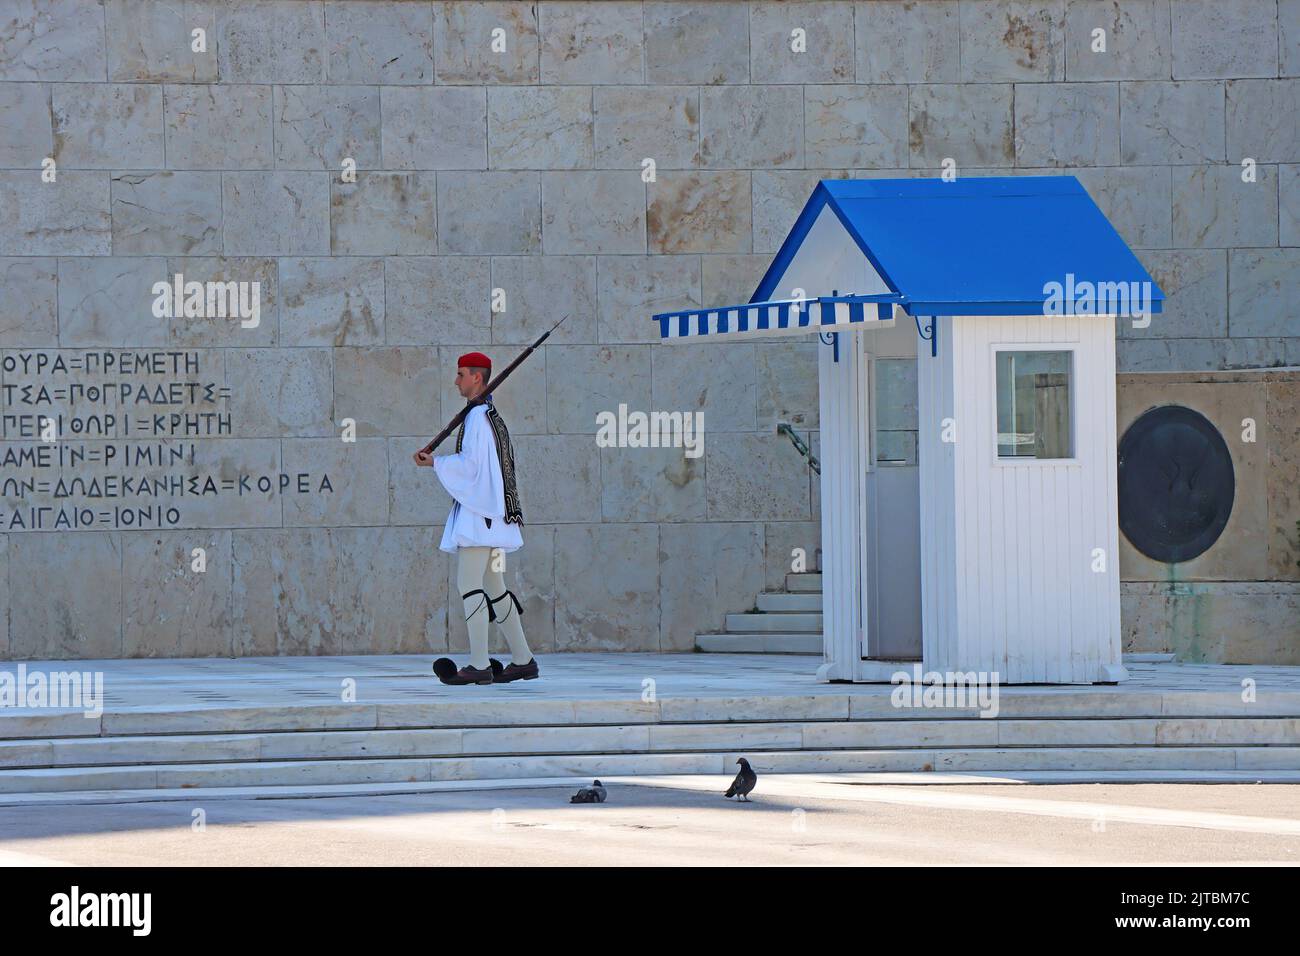 Atenas, griego - 28 de agosto: 2022: Cambio de guardia frente al parlamento, Monumento del Soldado Desconocido en la plaza Syntagma, en la plaza central Foto de stock